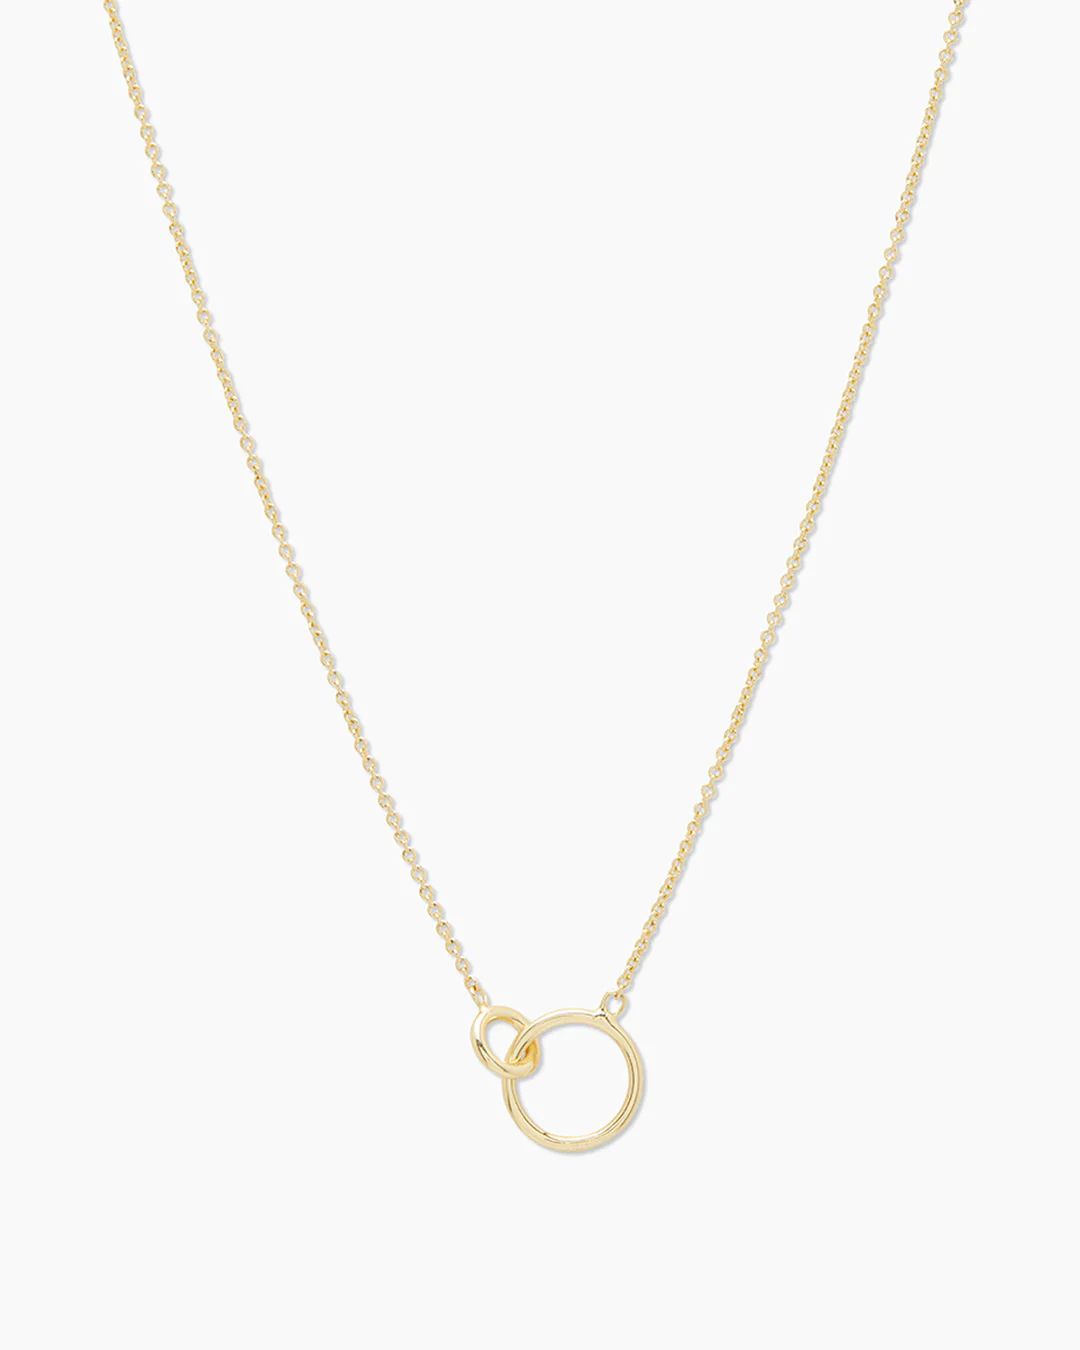 Wilshire Charm Adjustable Necklace | Gorjana